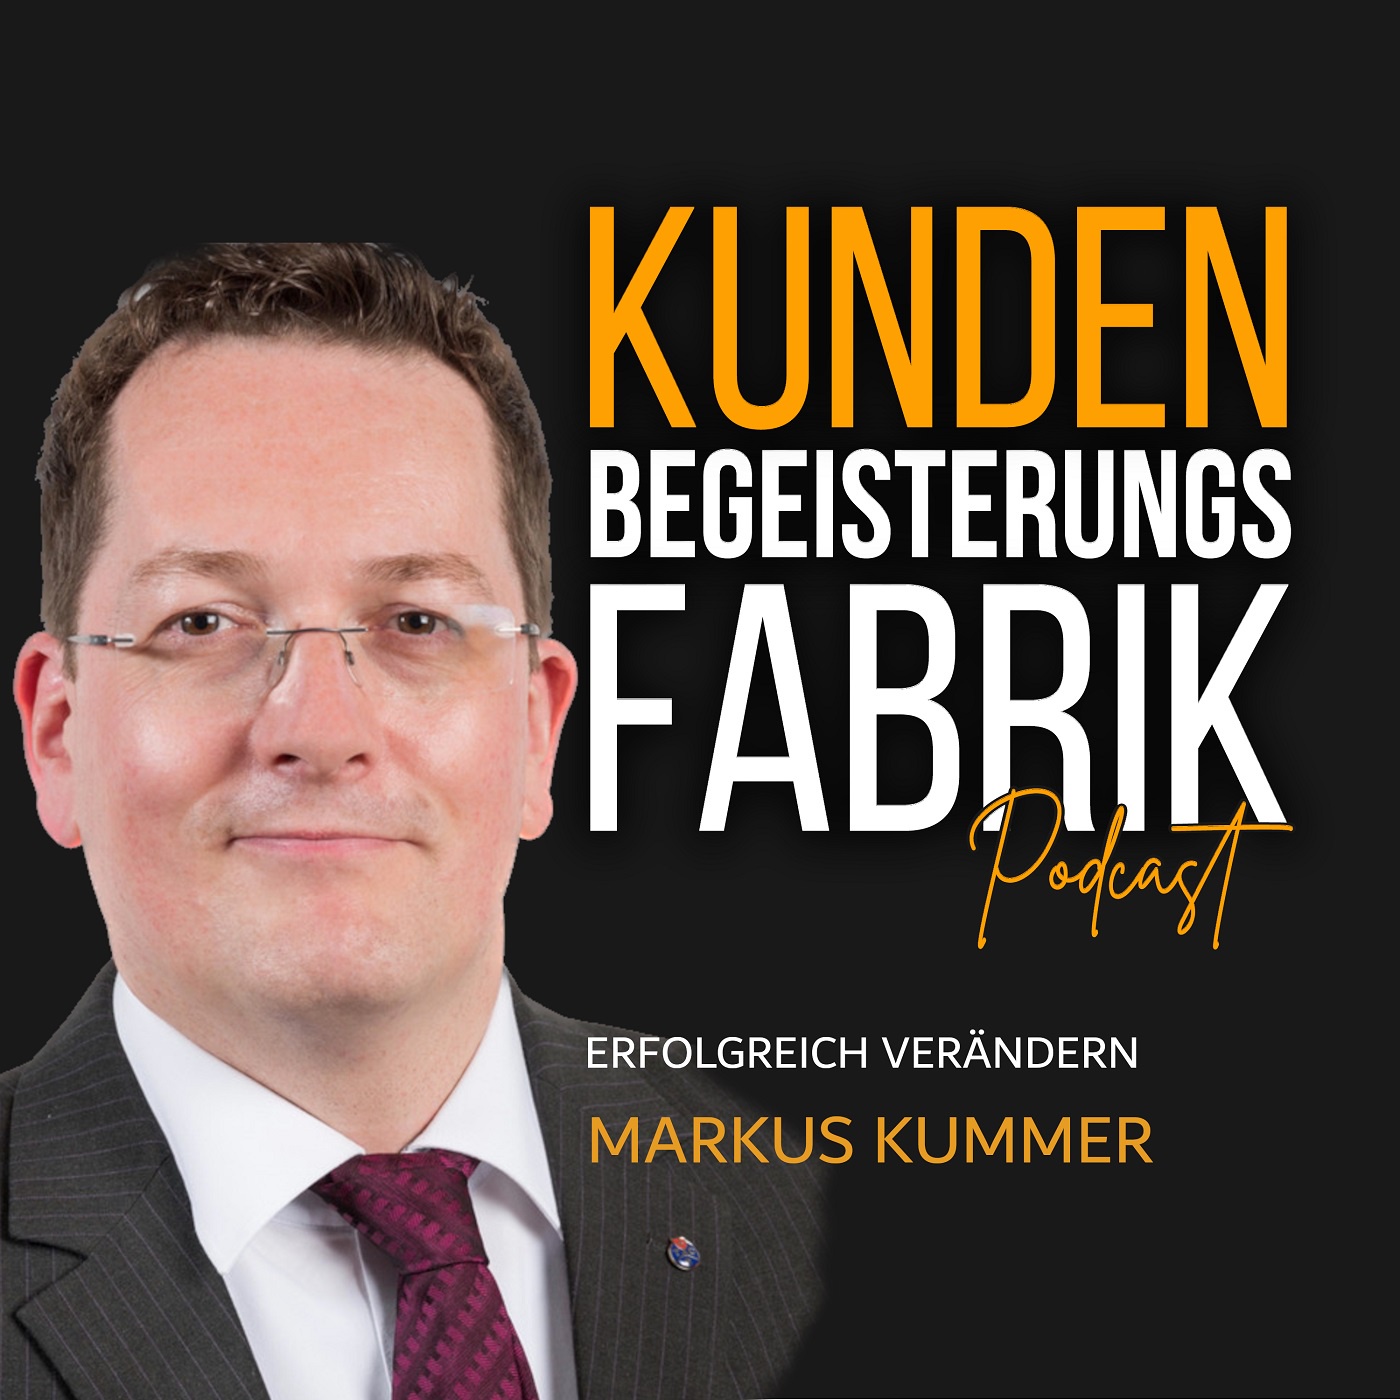 Markus Kummer: Erfolgreich verändern